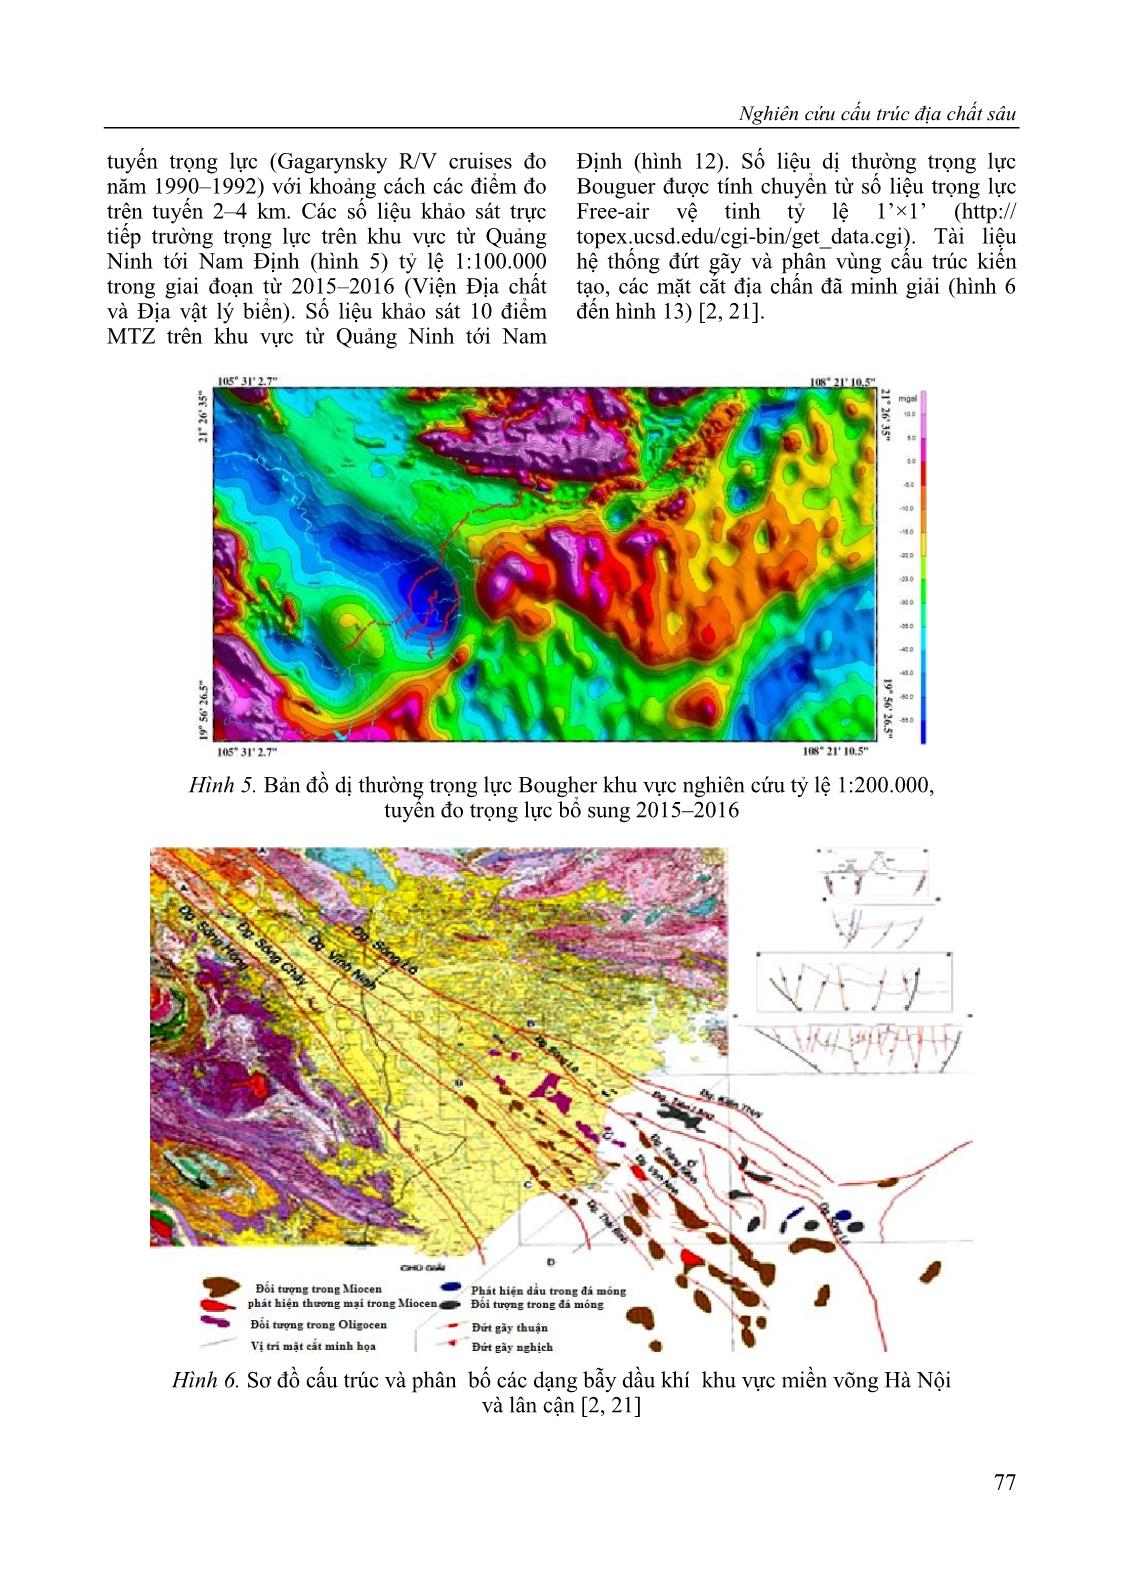 Nghiên cứu cấu trúc địa chất sâu và dự báo một số khu vực có triển vọng dầu khí thuộc dải ven biển châu thổ sông Hồng theo tài liệu địa vật lý trang 7